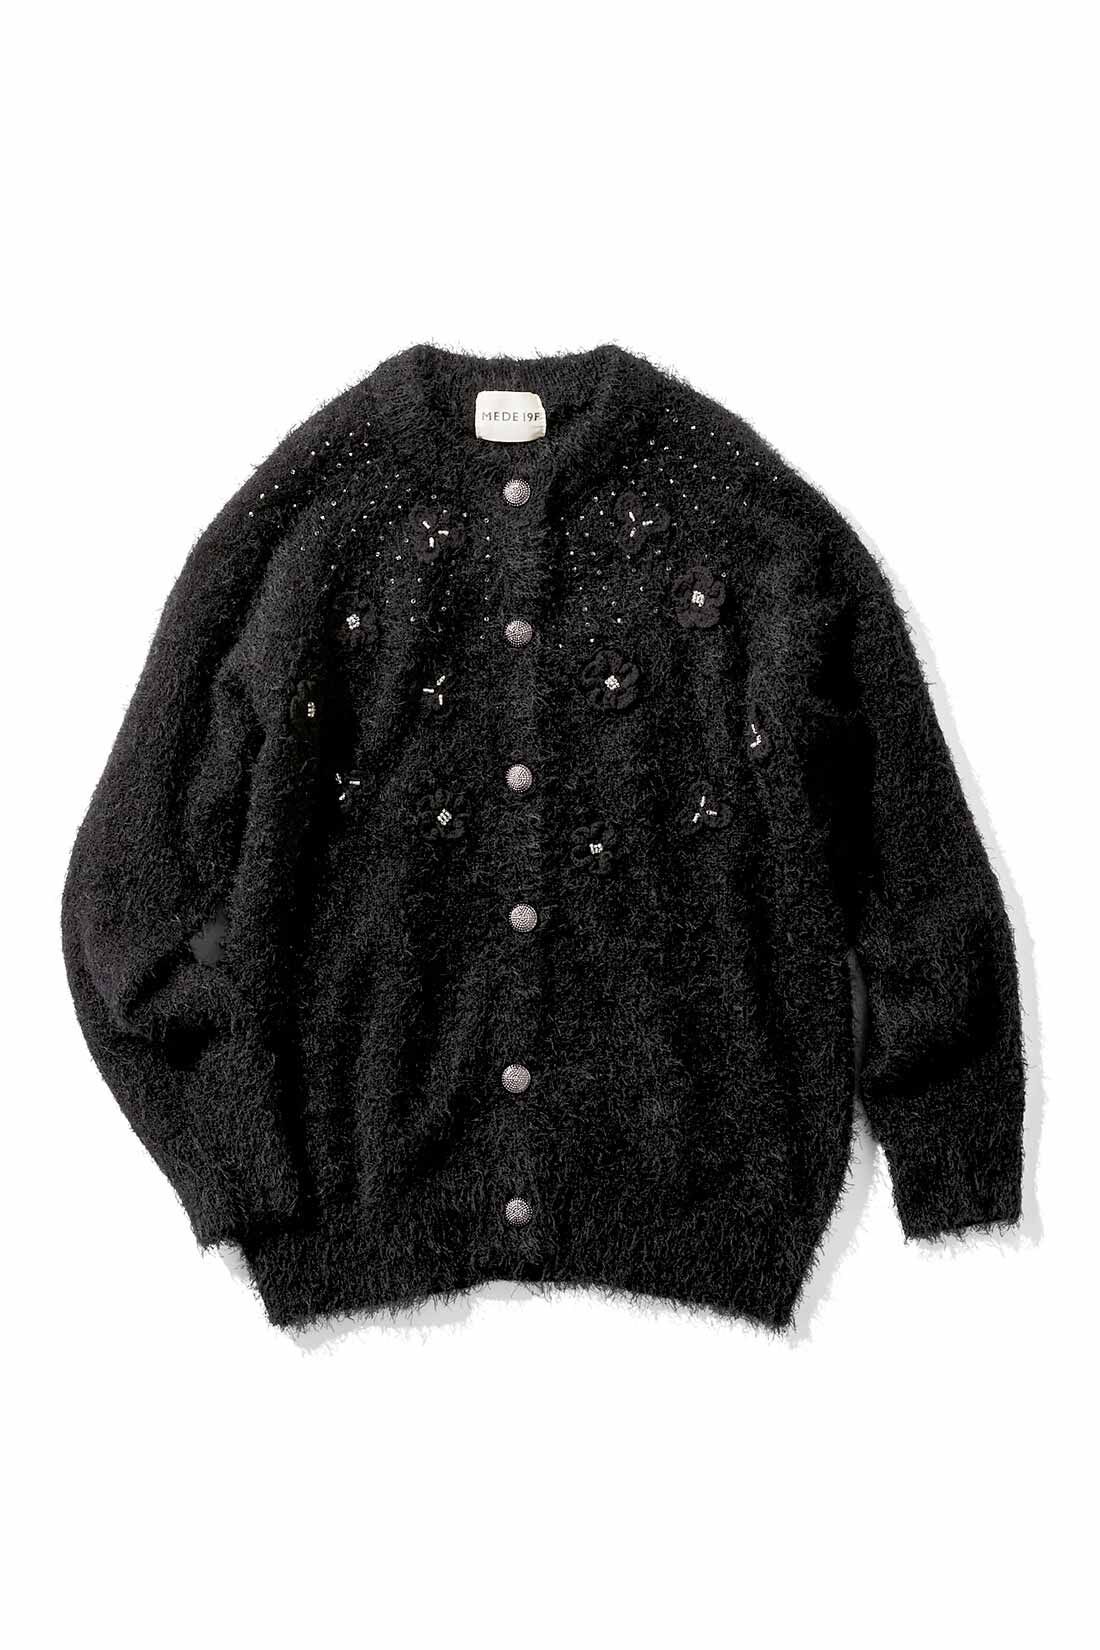 シャネル 長袖セーター サイズ44 L - 黒